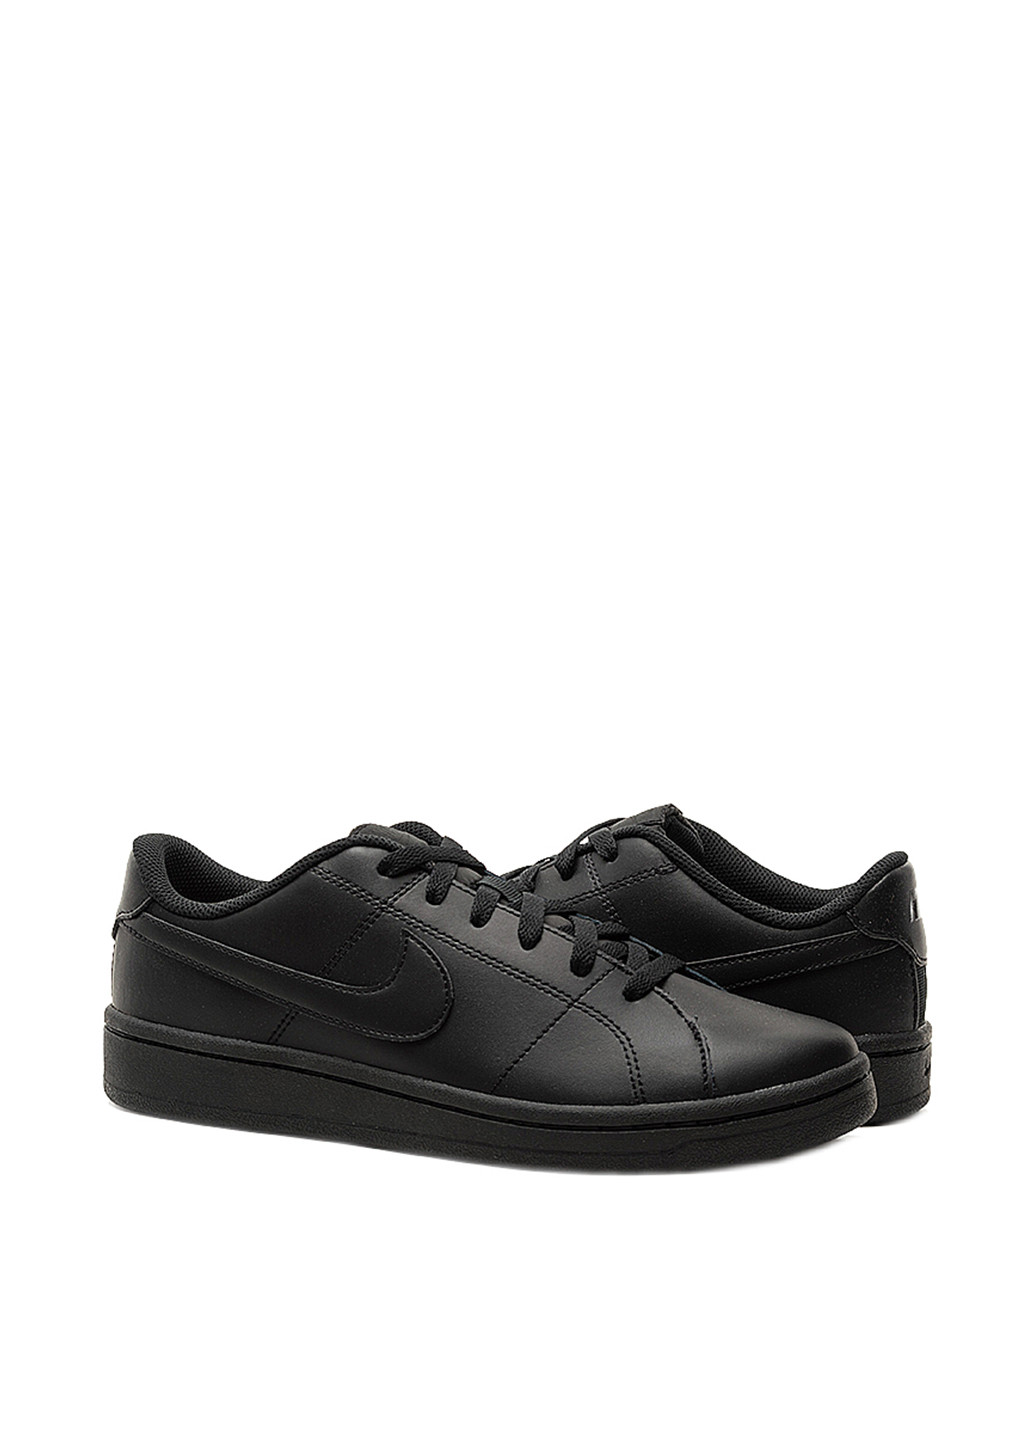 Черные всесезонные кроссовки Nike Nike Court Royale 2 Low